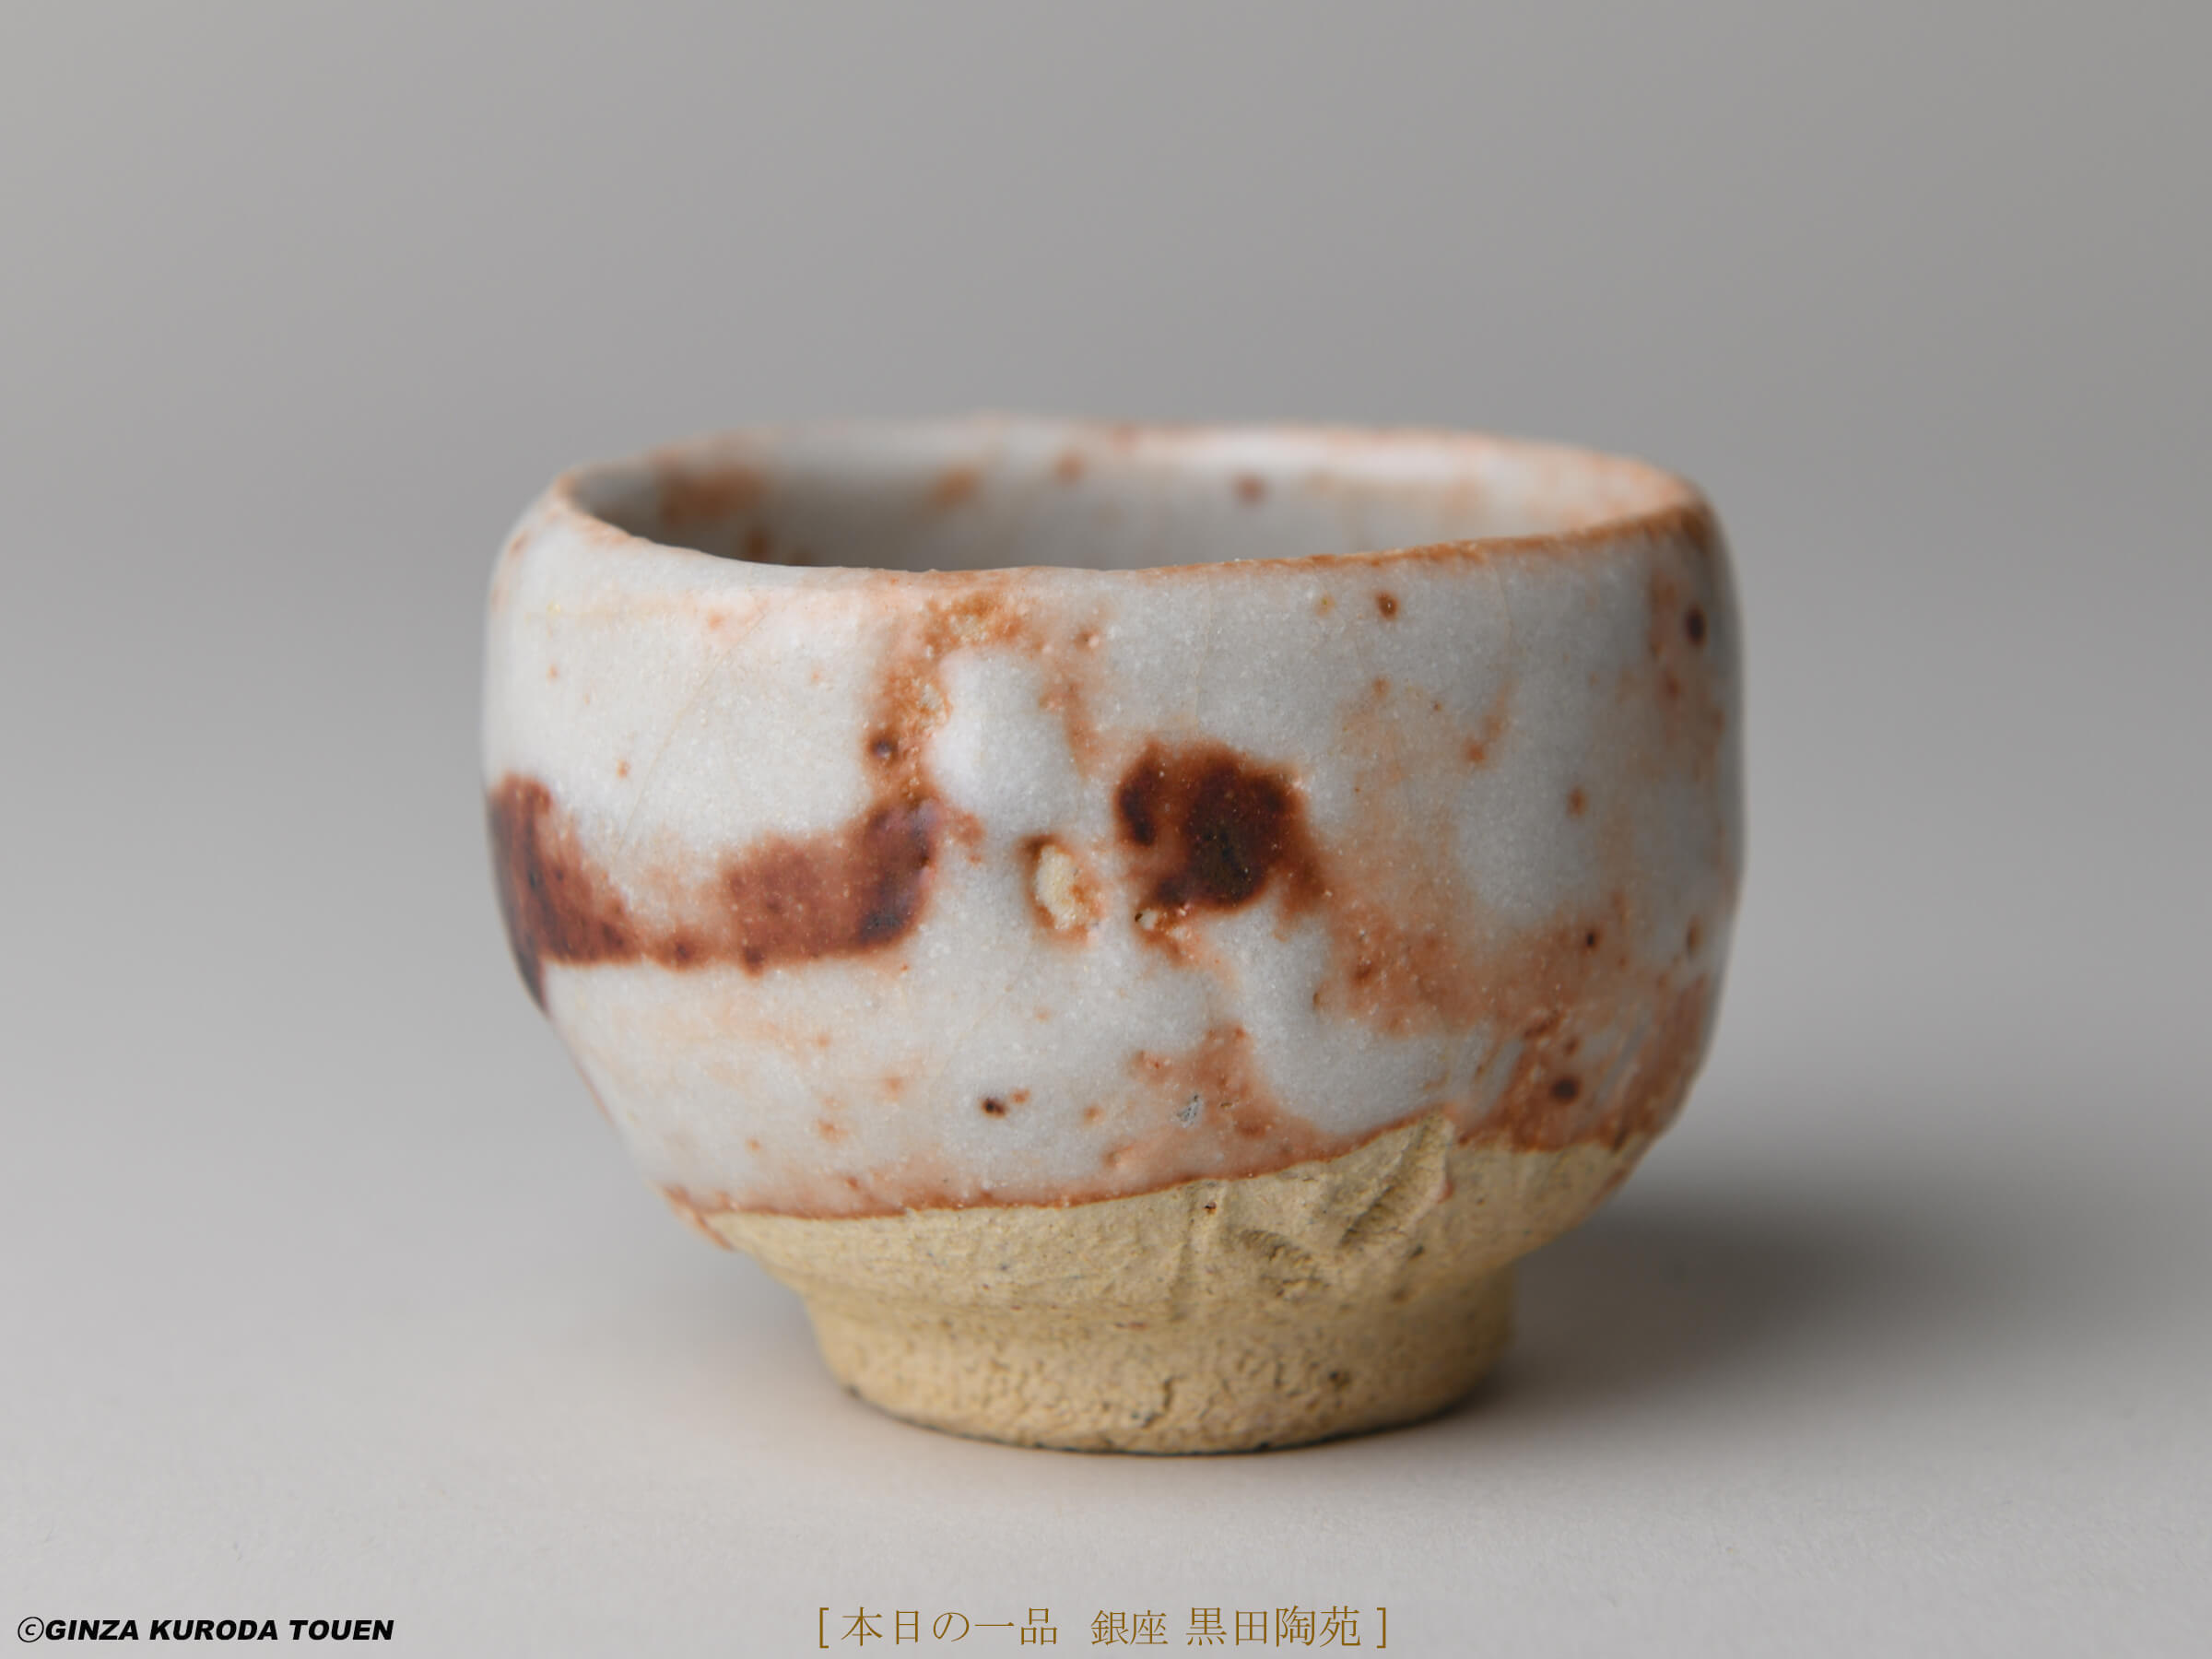 Tokuro Kato: Sake cup